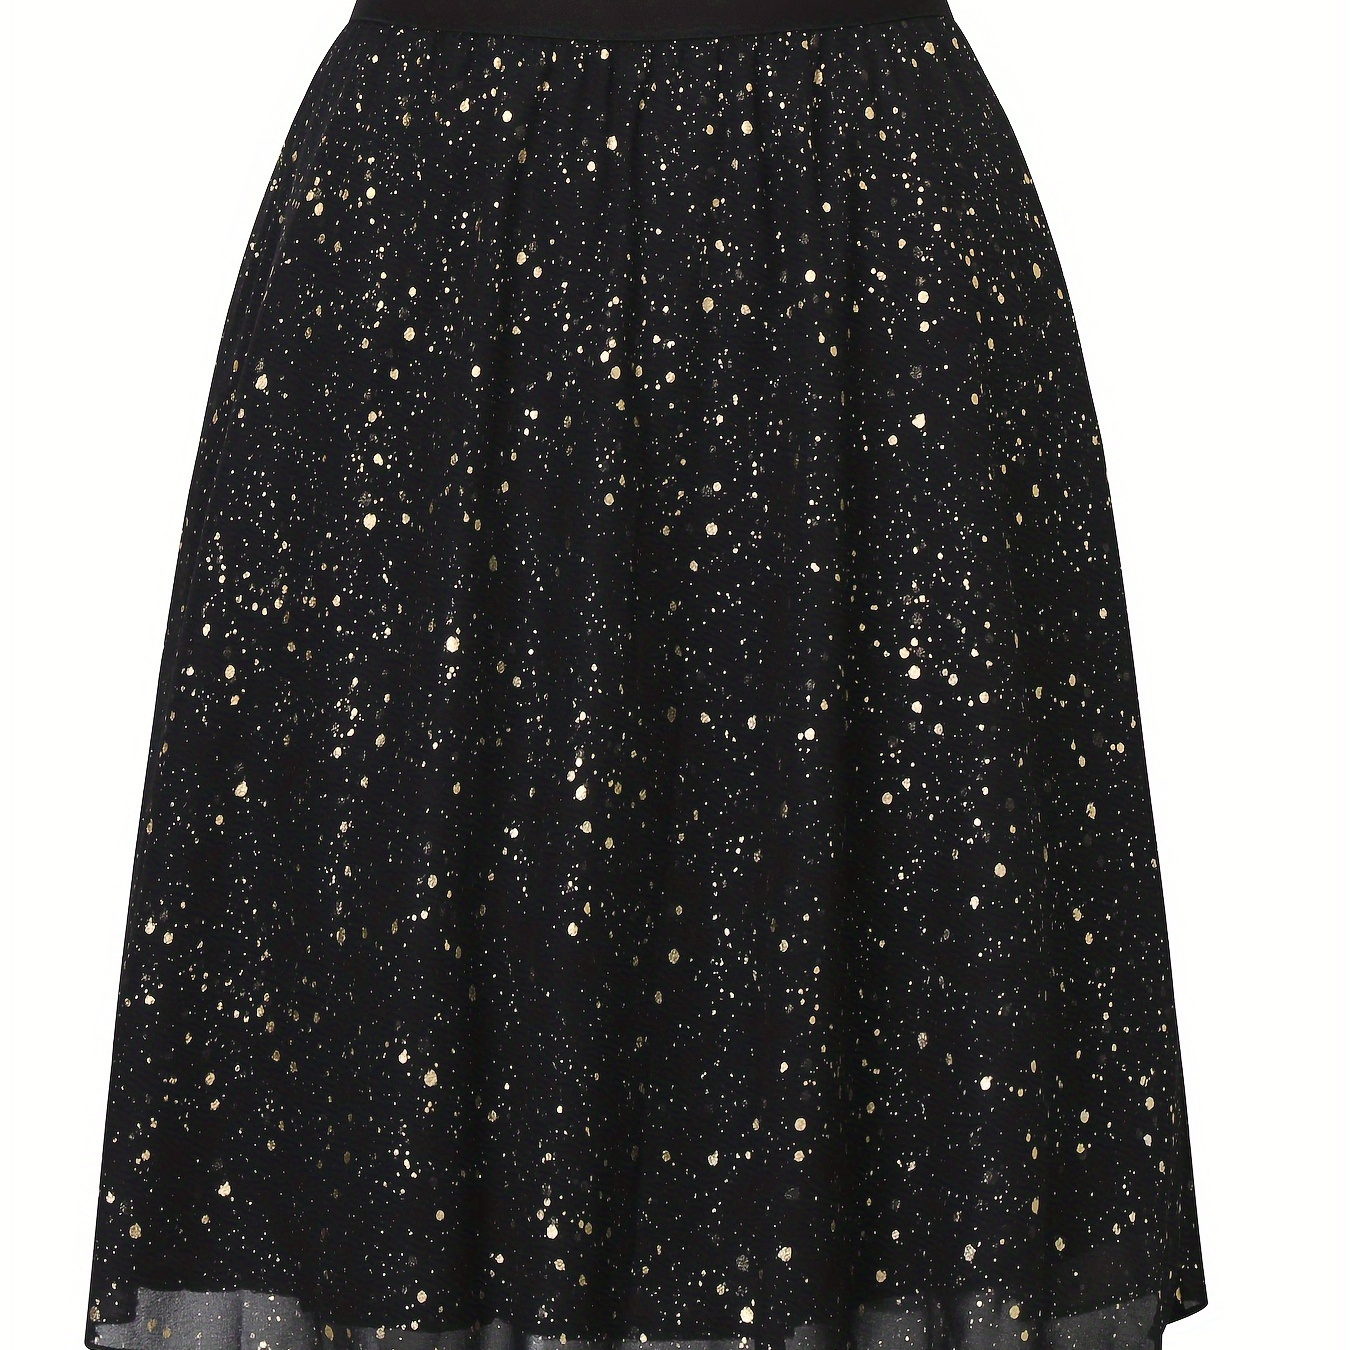 

Allover Print Elastic Waist Tulle Skirt, Casual A-line Mini Skirt For Spring & Summer, Women's Clothing